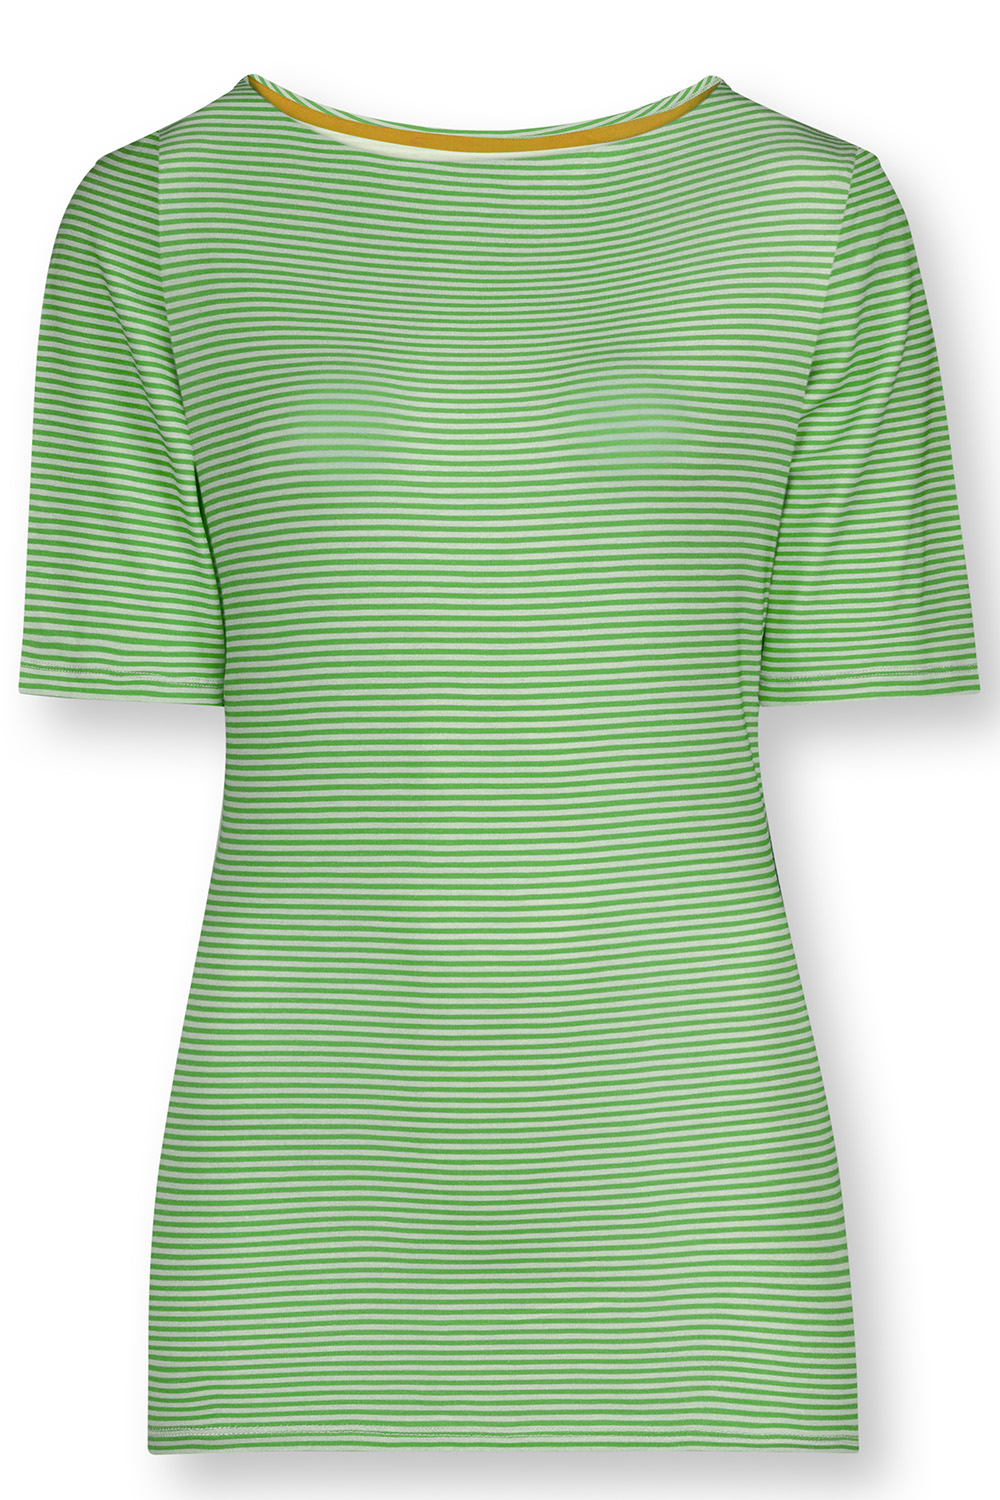 Pip Studio Tjessy Little Sumo Kurzarmshirt Loungewear 2 38 grün günstig online kaufen